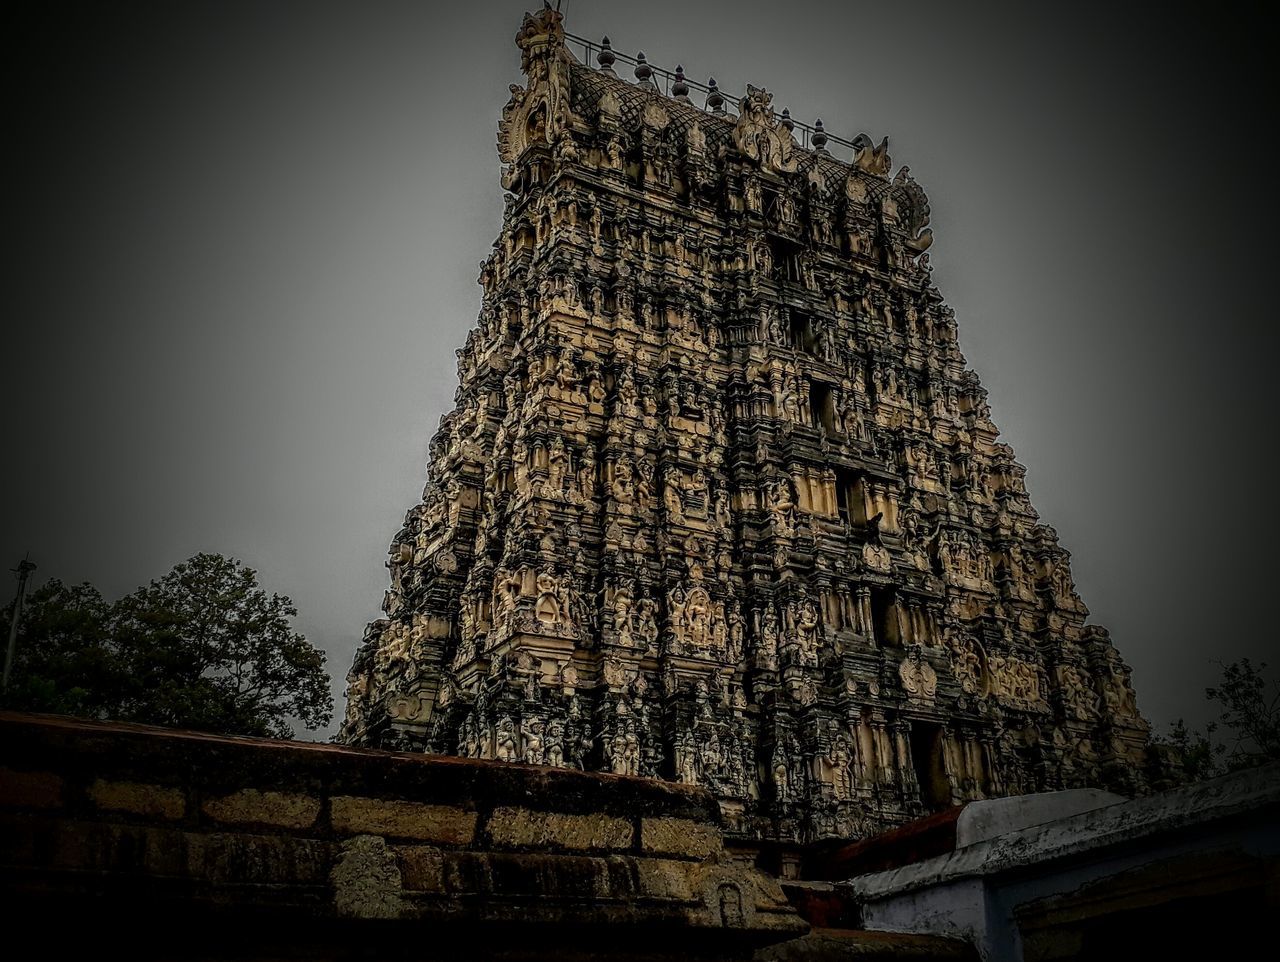 Sri Papanasaswamy temple